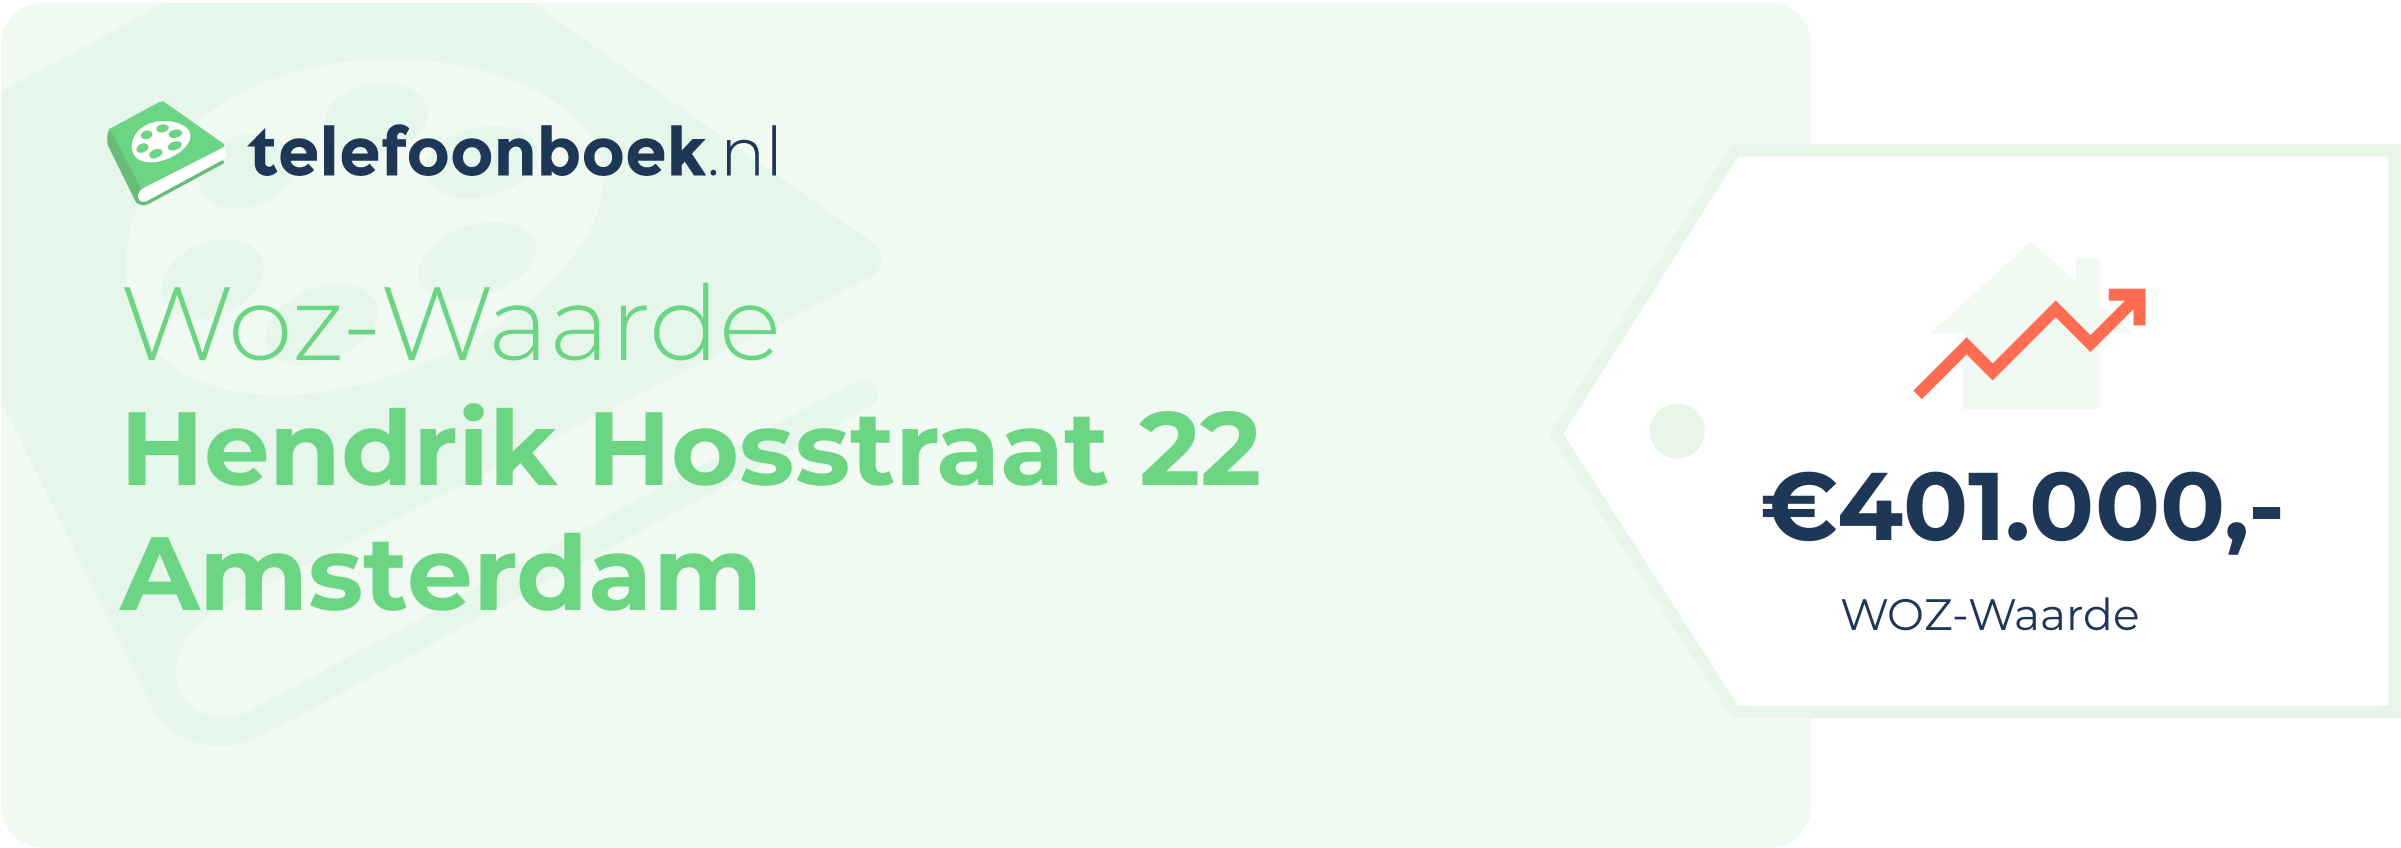 WOZ-waarde Hendrik Hosstraat 22 Amsterdam